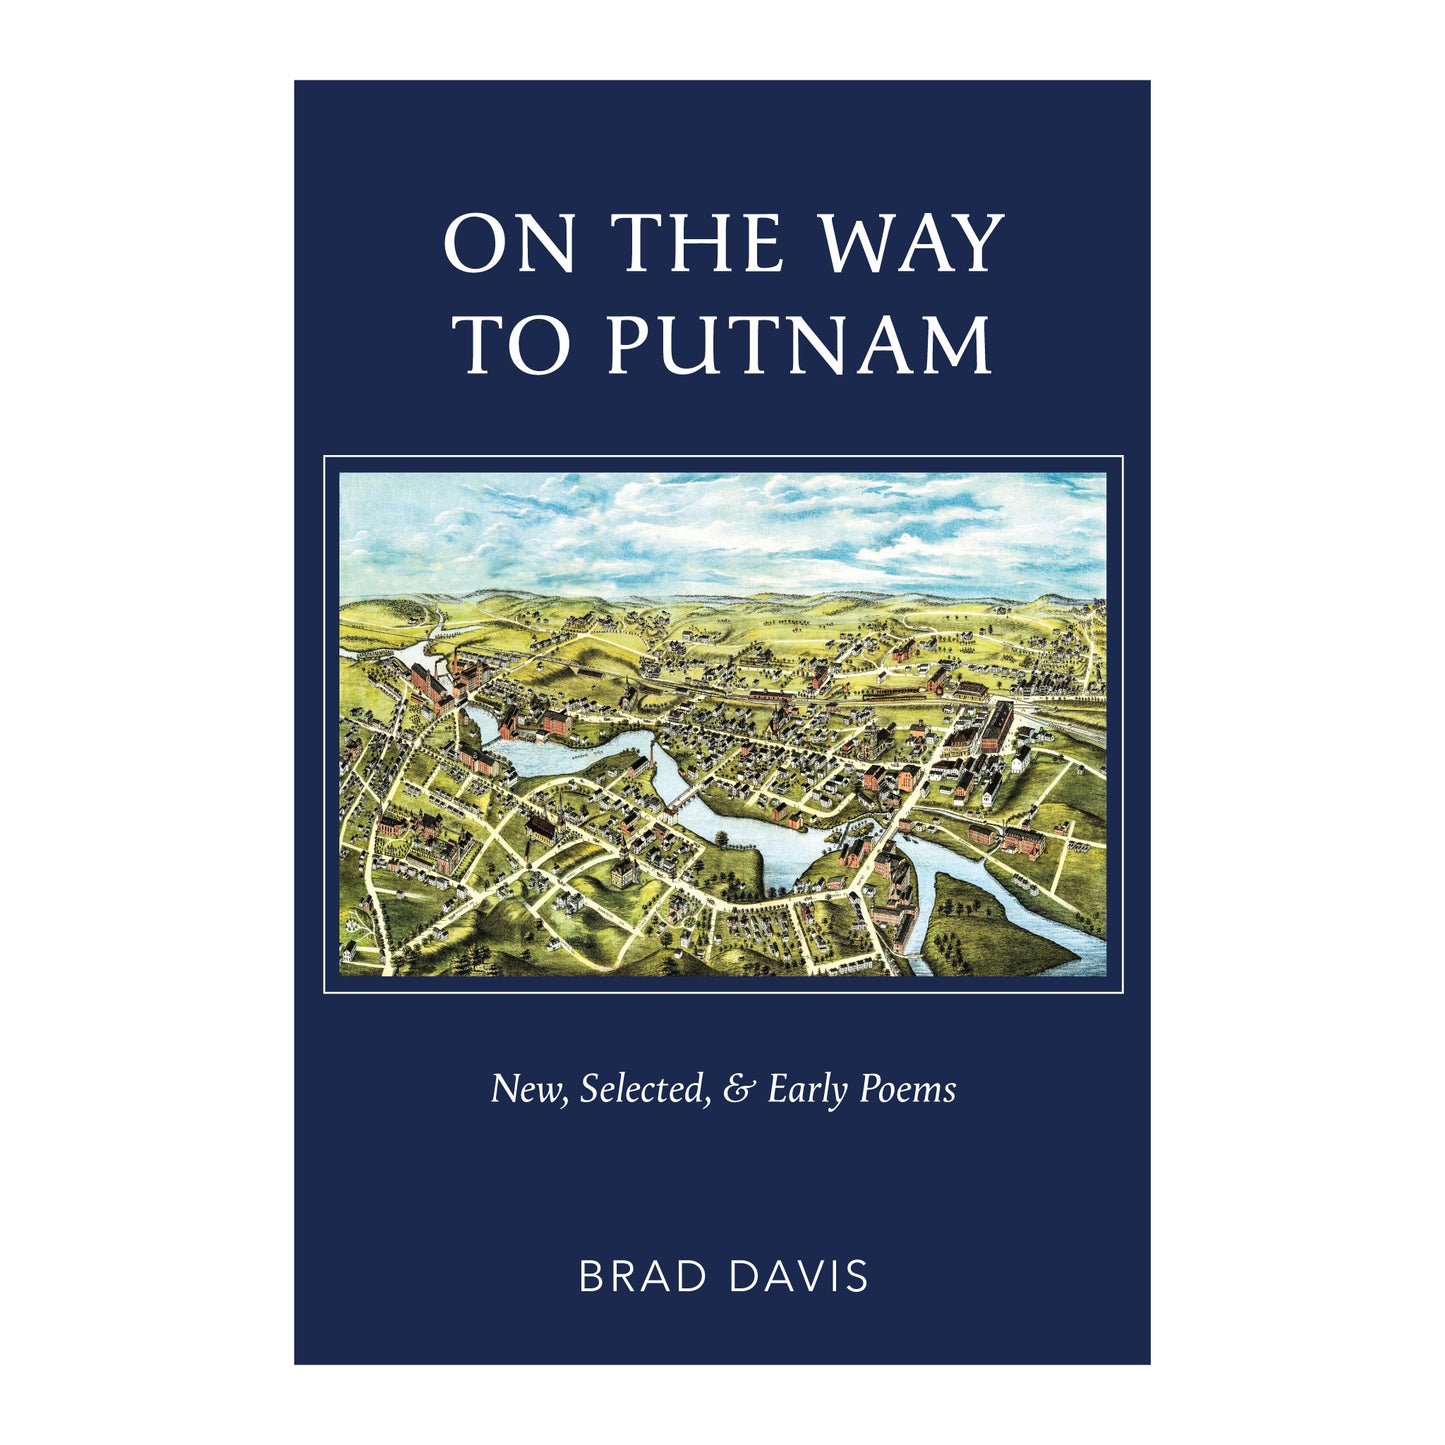 On the Way to Putnam by Brad Davis